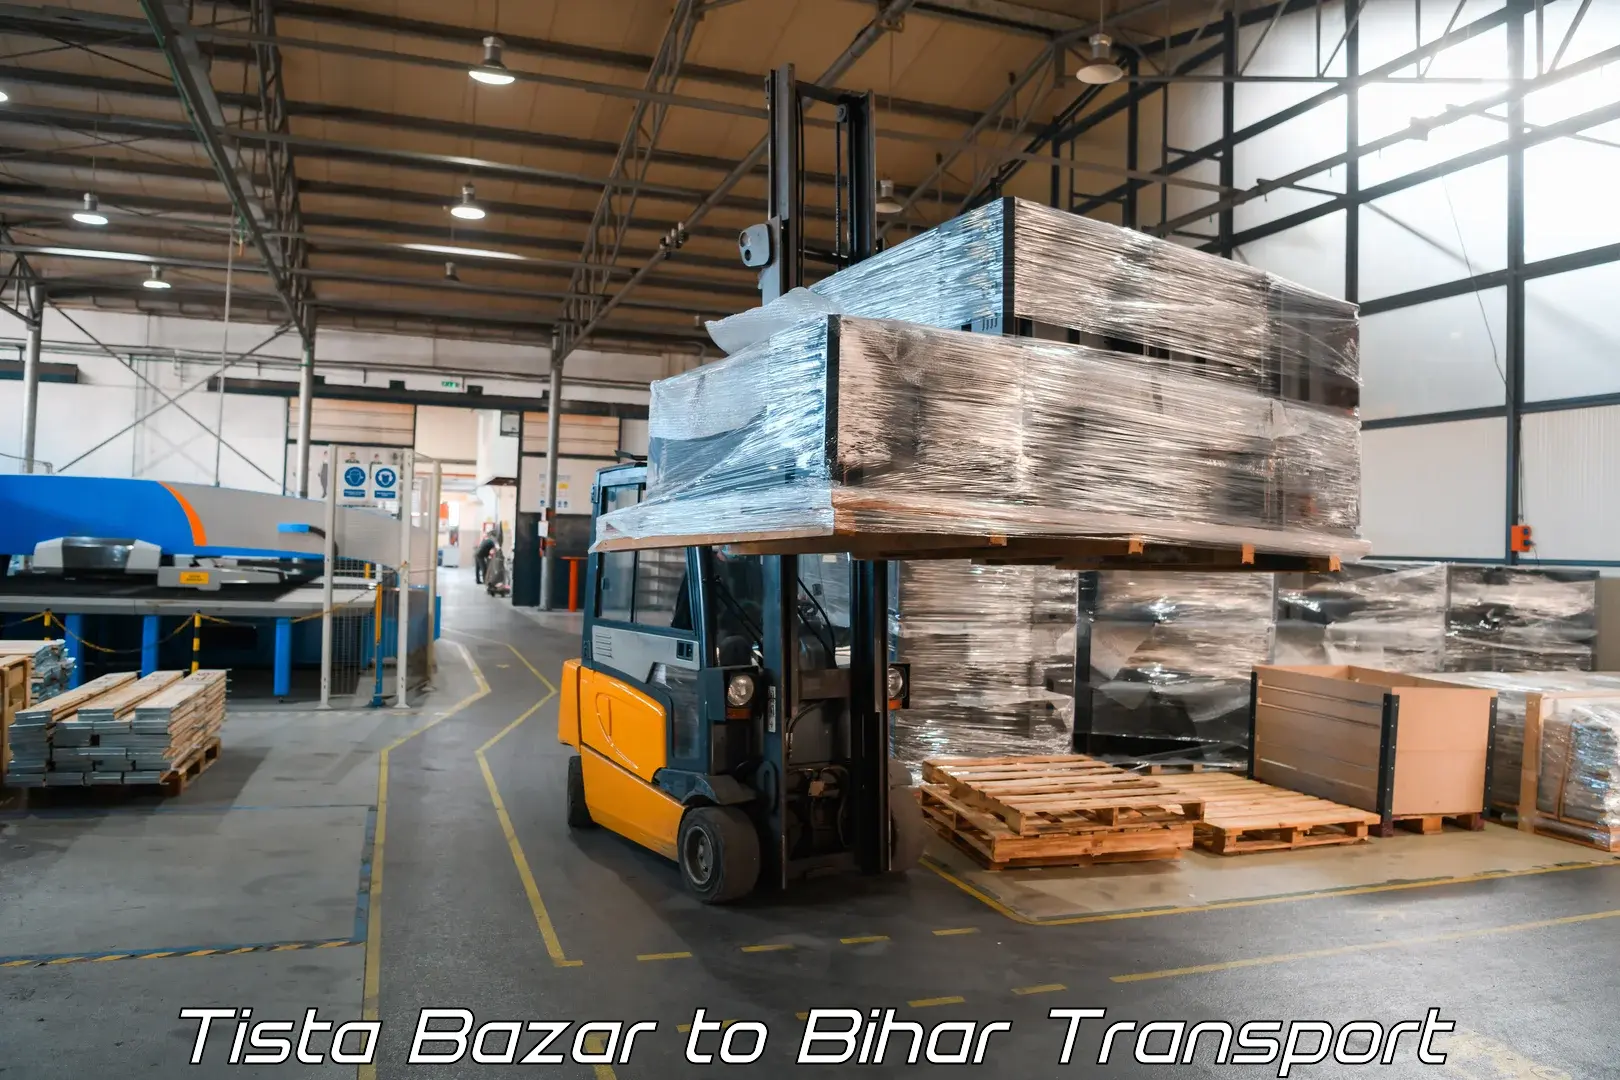 Nearest transport service Tista Bazar to Hasanpura